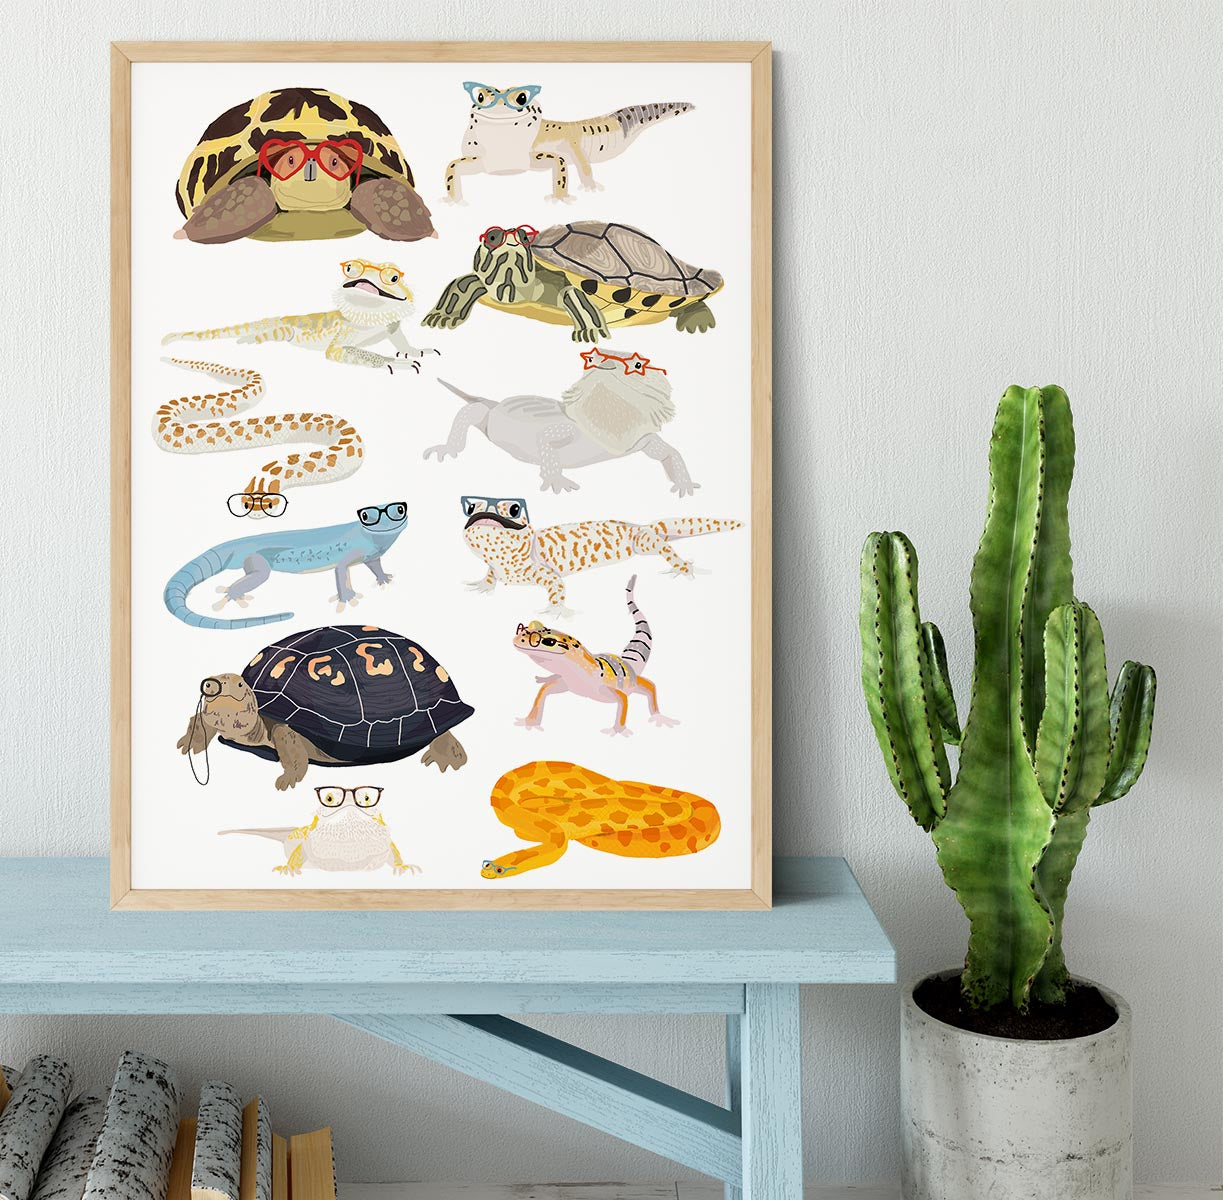 12 Reptiles In Glasses Framed Print - 1x - 4